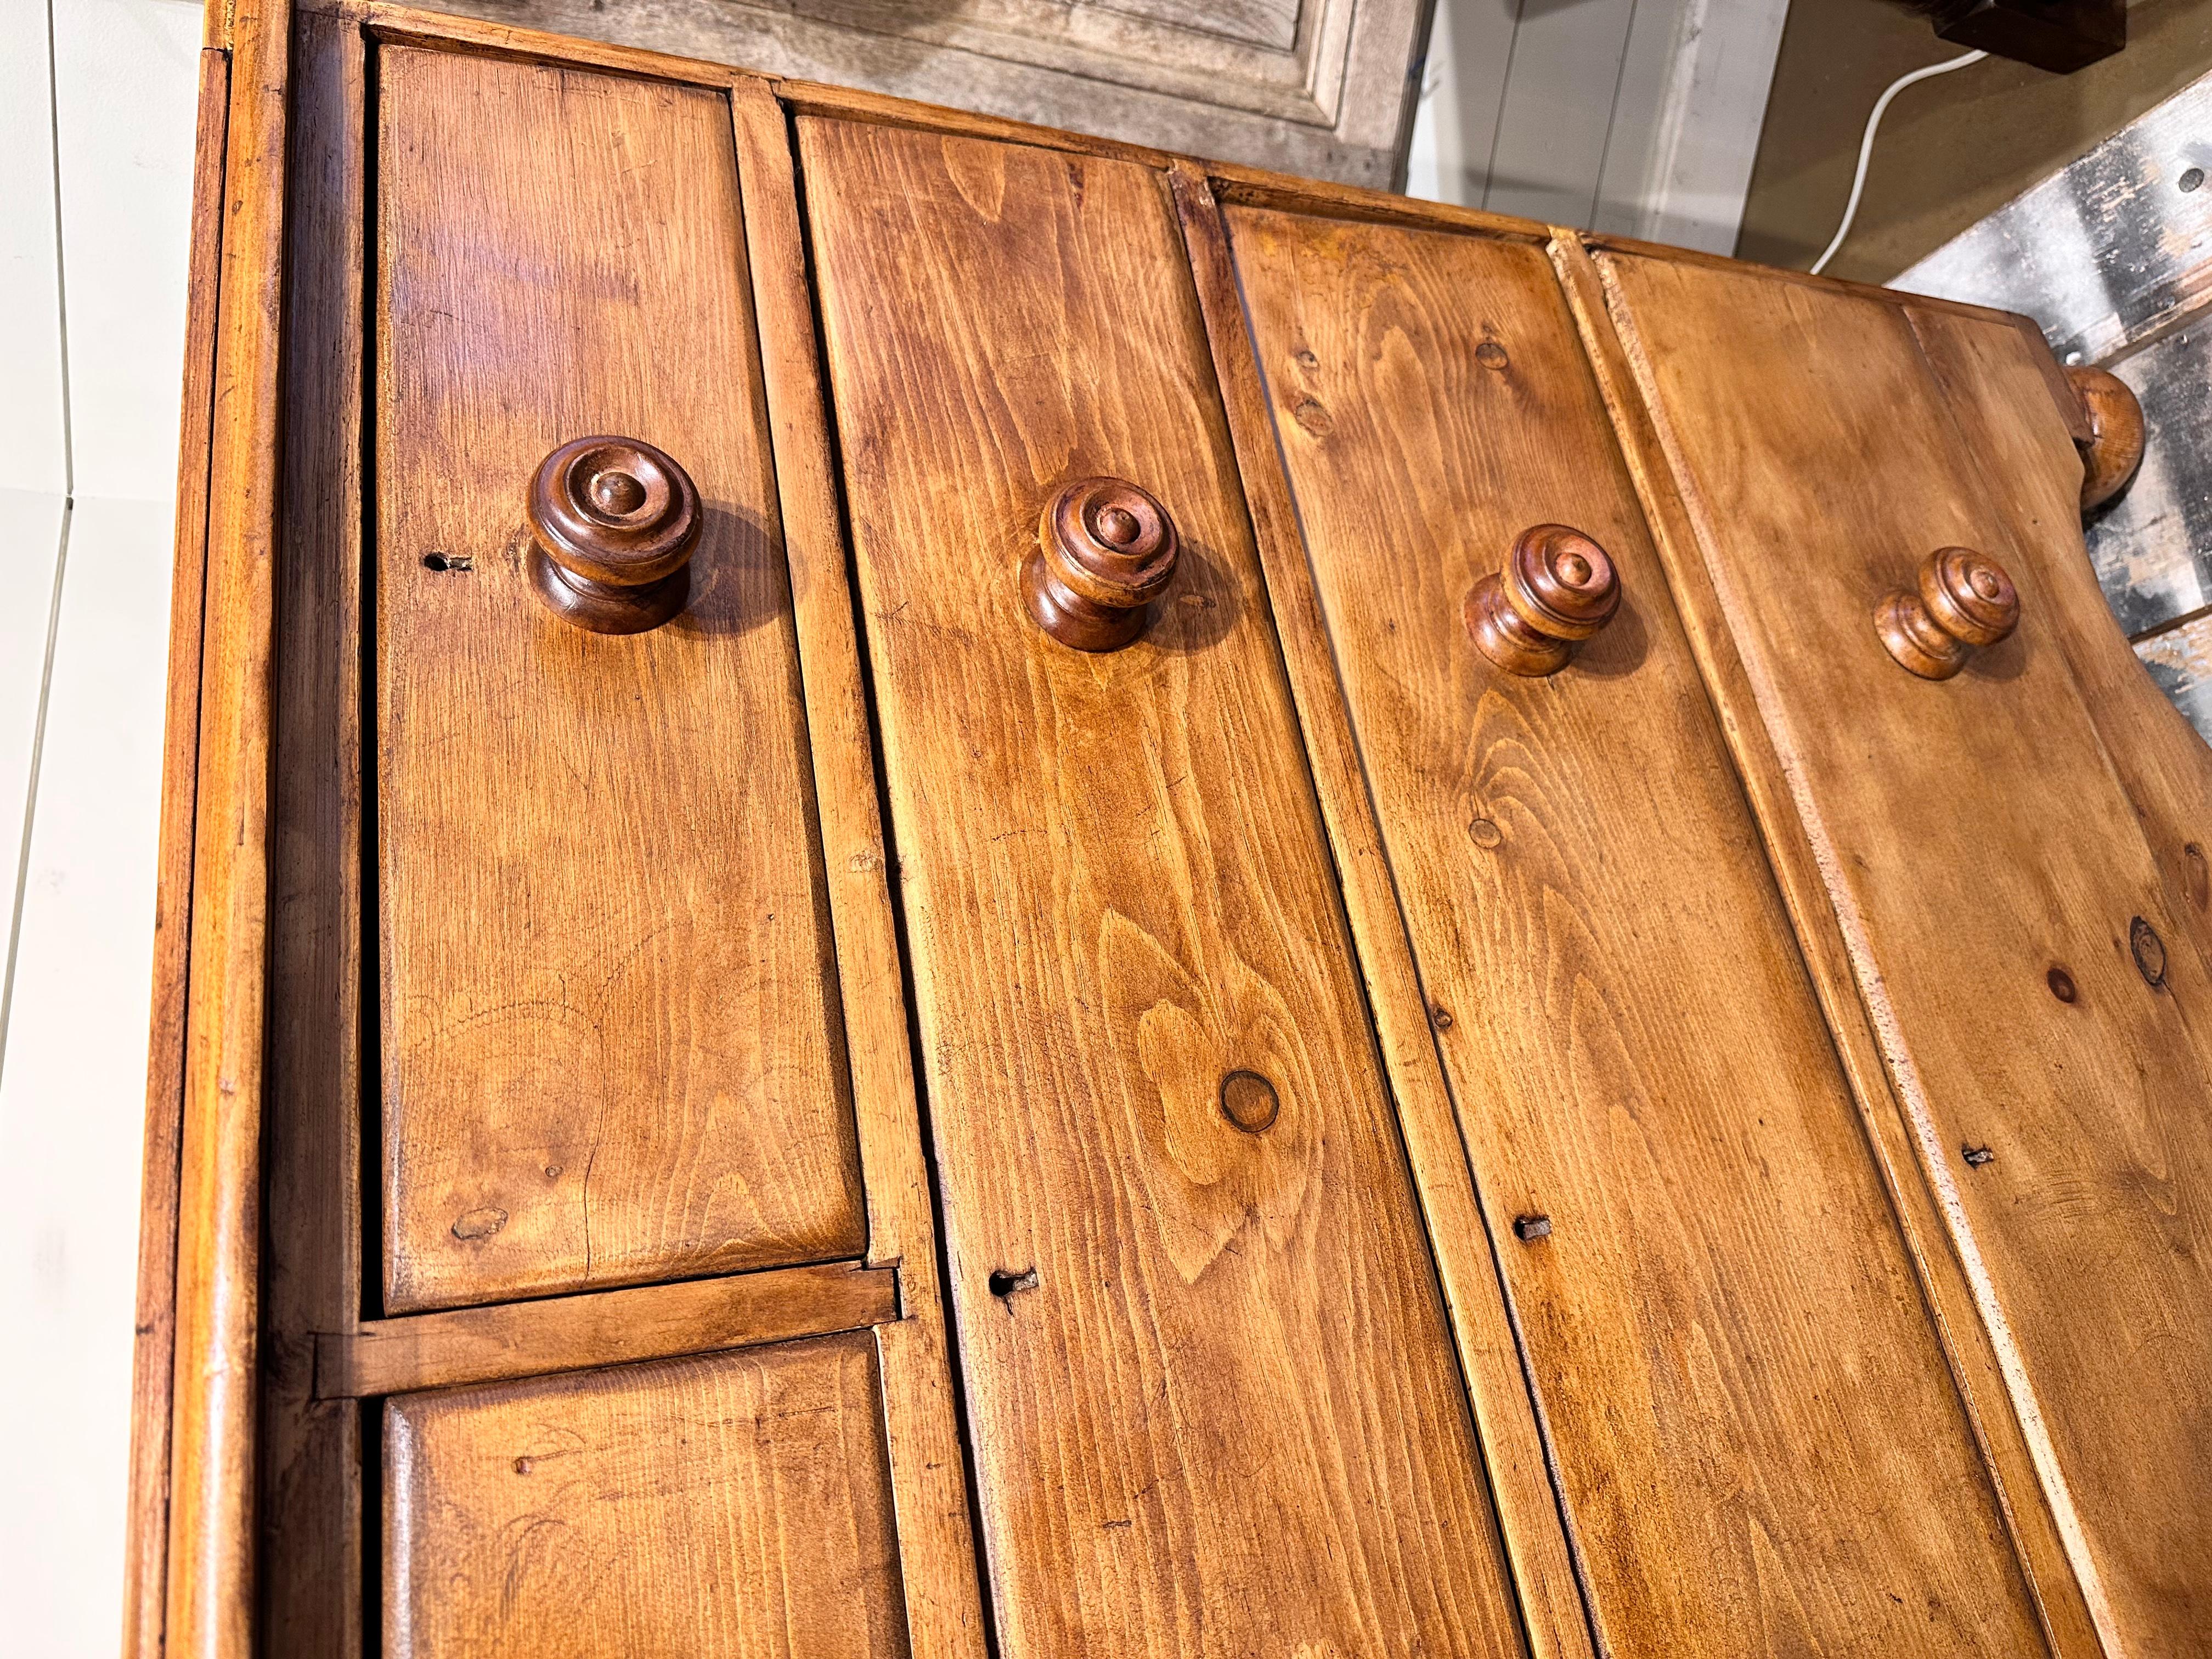 Il s'agit d'un joli coffre ancien en pin ! Cette pièce date du 19e siècle et présente une belle patine. Le bois a un éclat chaud, qui est parfaitement mis en valeur par les boutons teintés plus foncés. Ce coffre est un modèle deux sur trois avec un